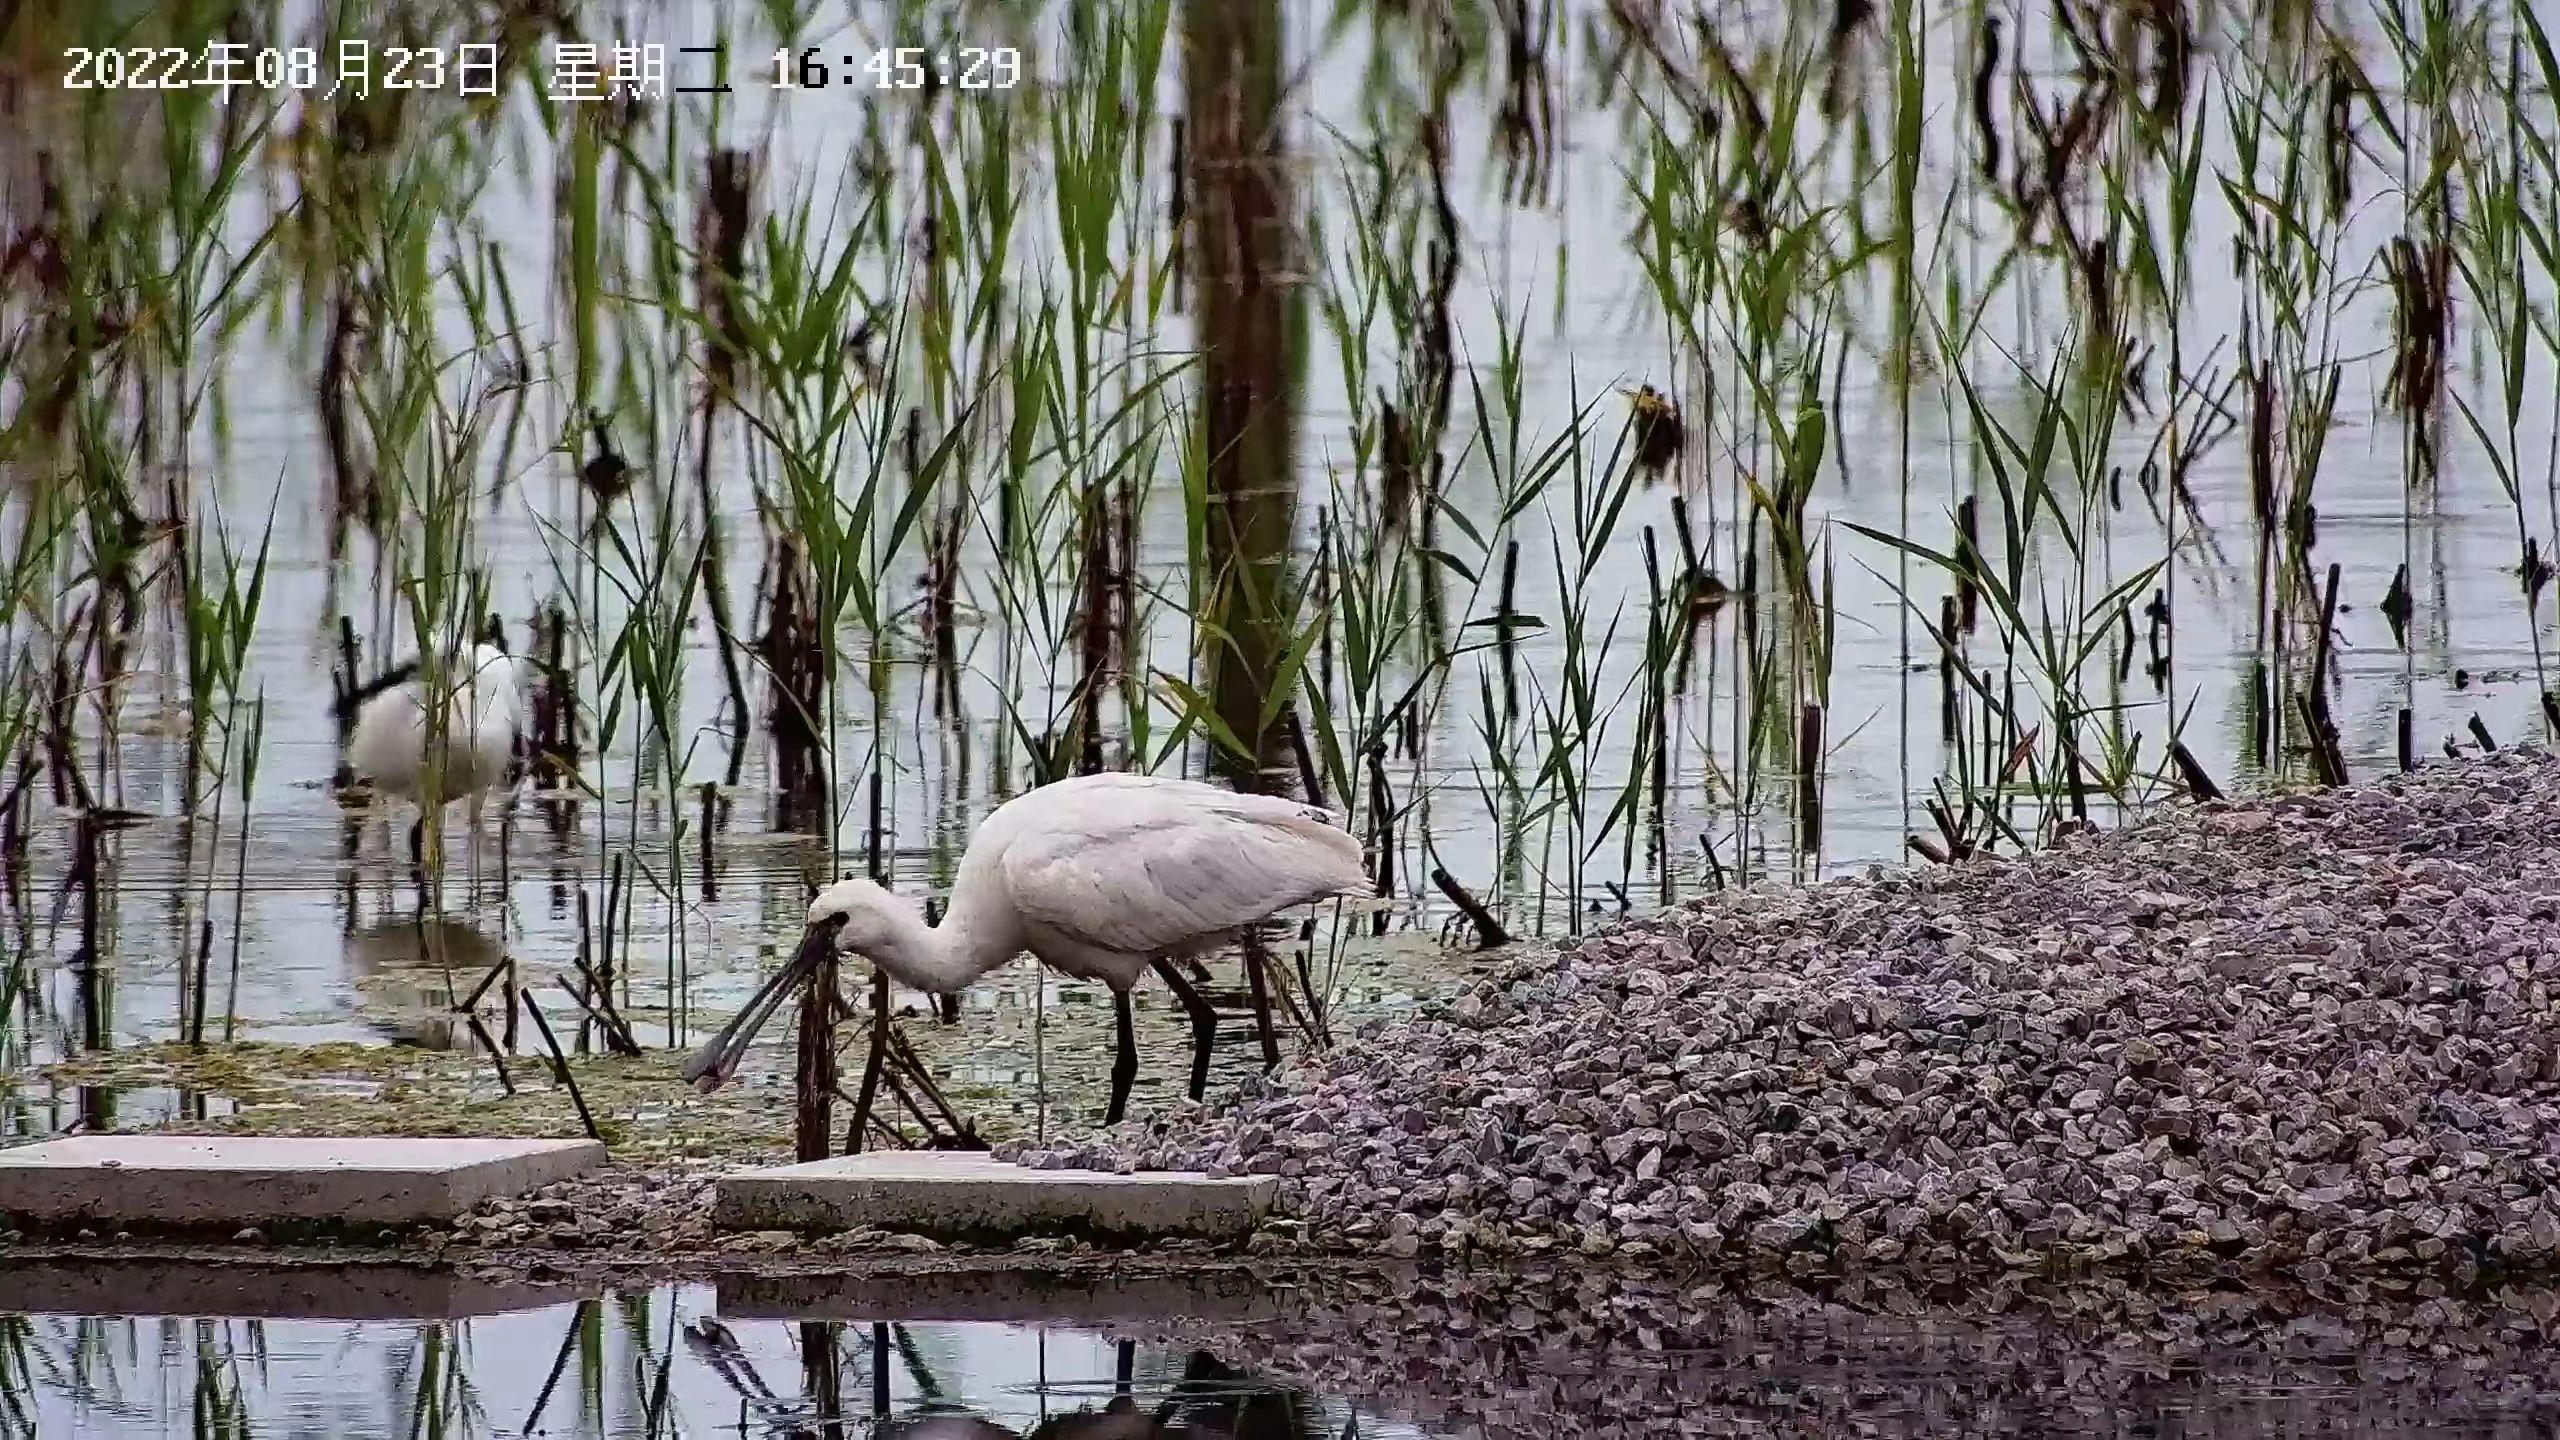 妫水河湿地首现黑脸琵鹭,北京试点应用AI识别装备监测鸟类